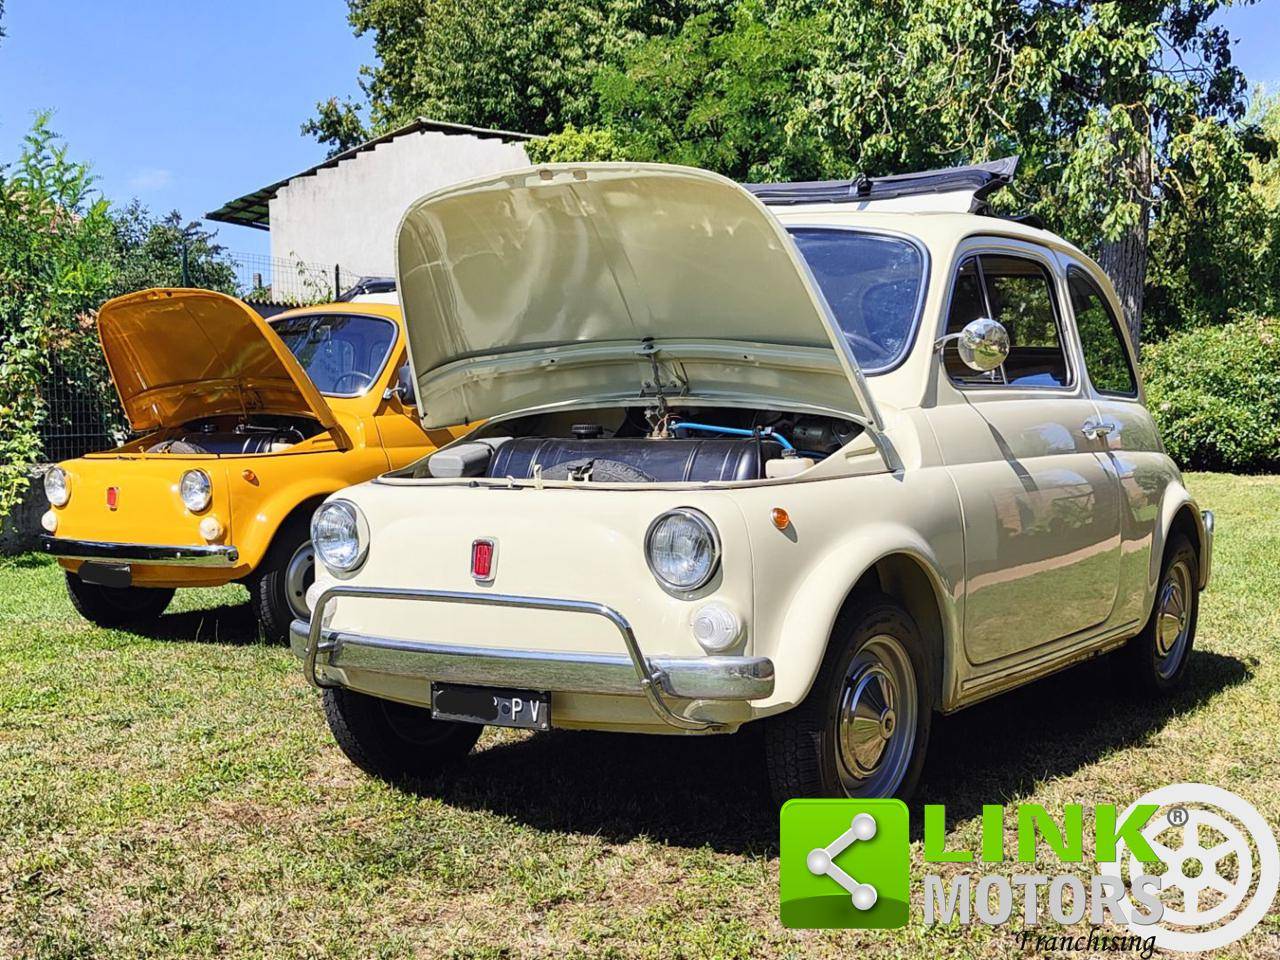 Fiat 500 L Conservata - Lanzauto S.r.l.